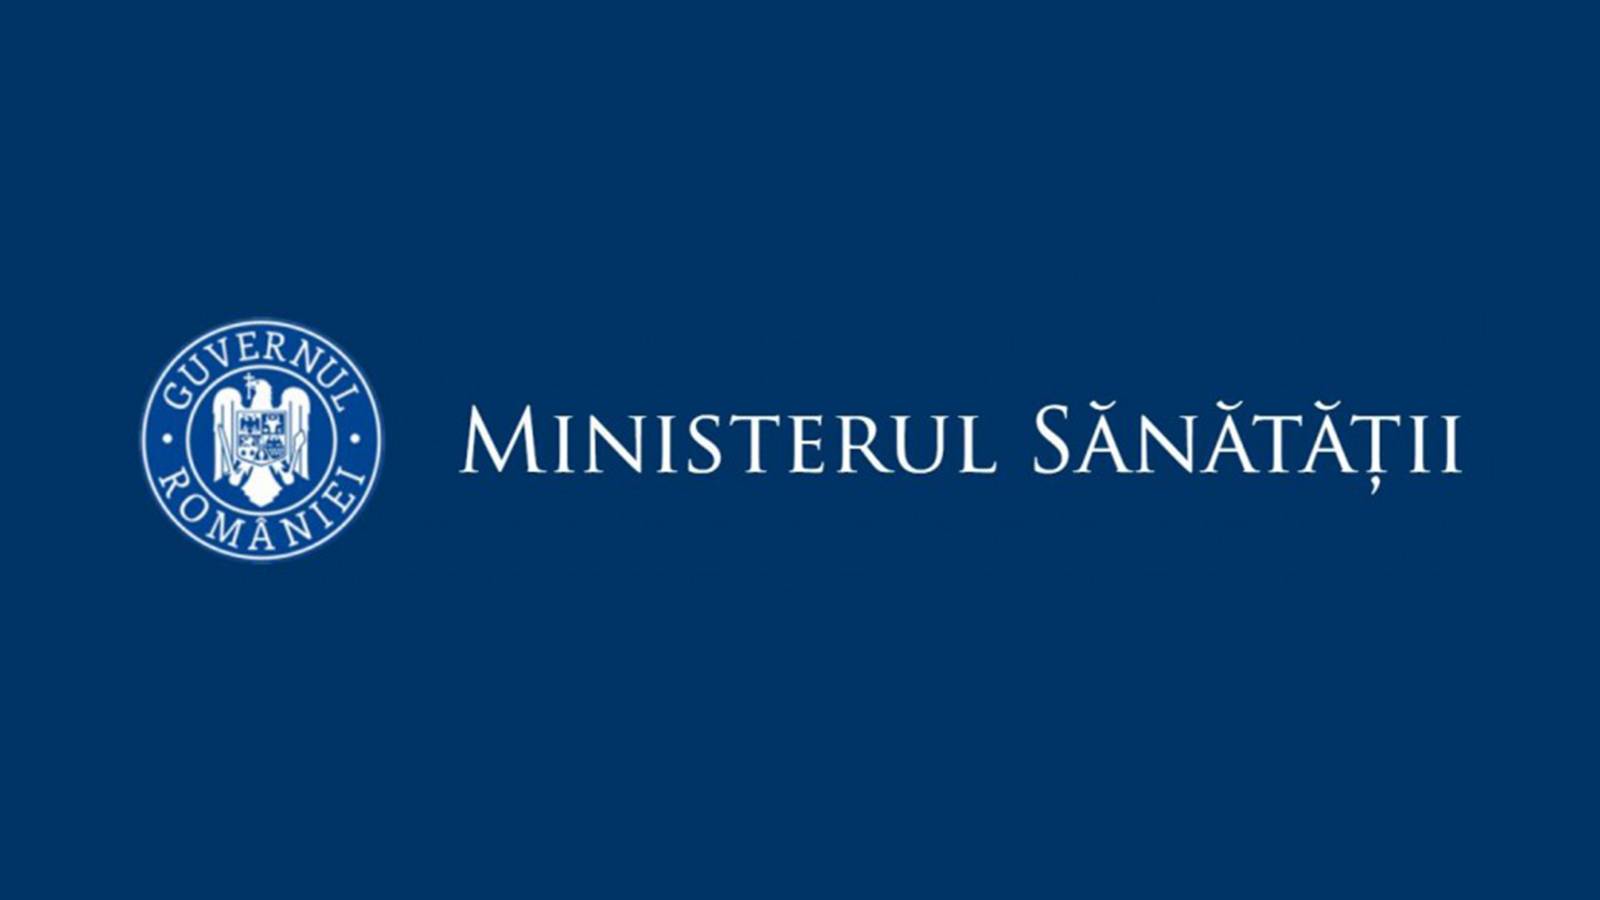 Taux d'incidence du ministère de la Santé pour les comtés de toute la Roumanie